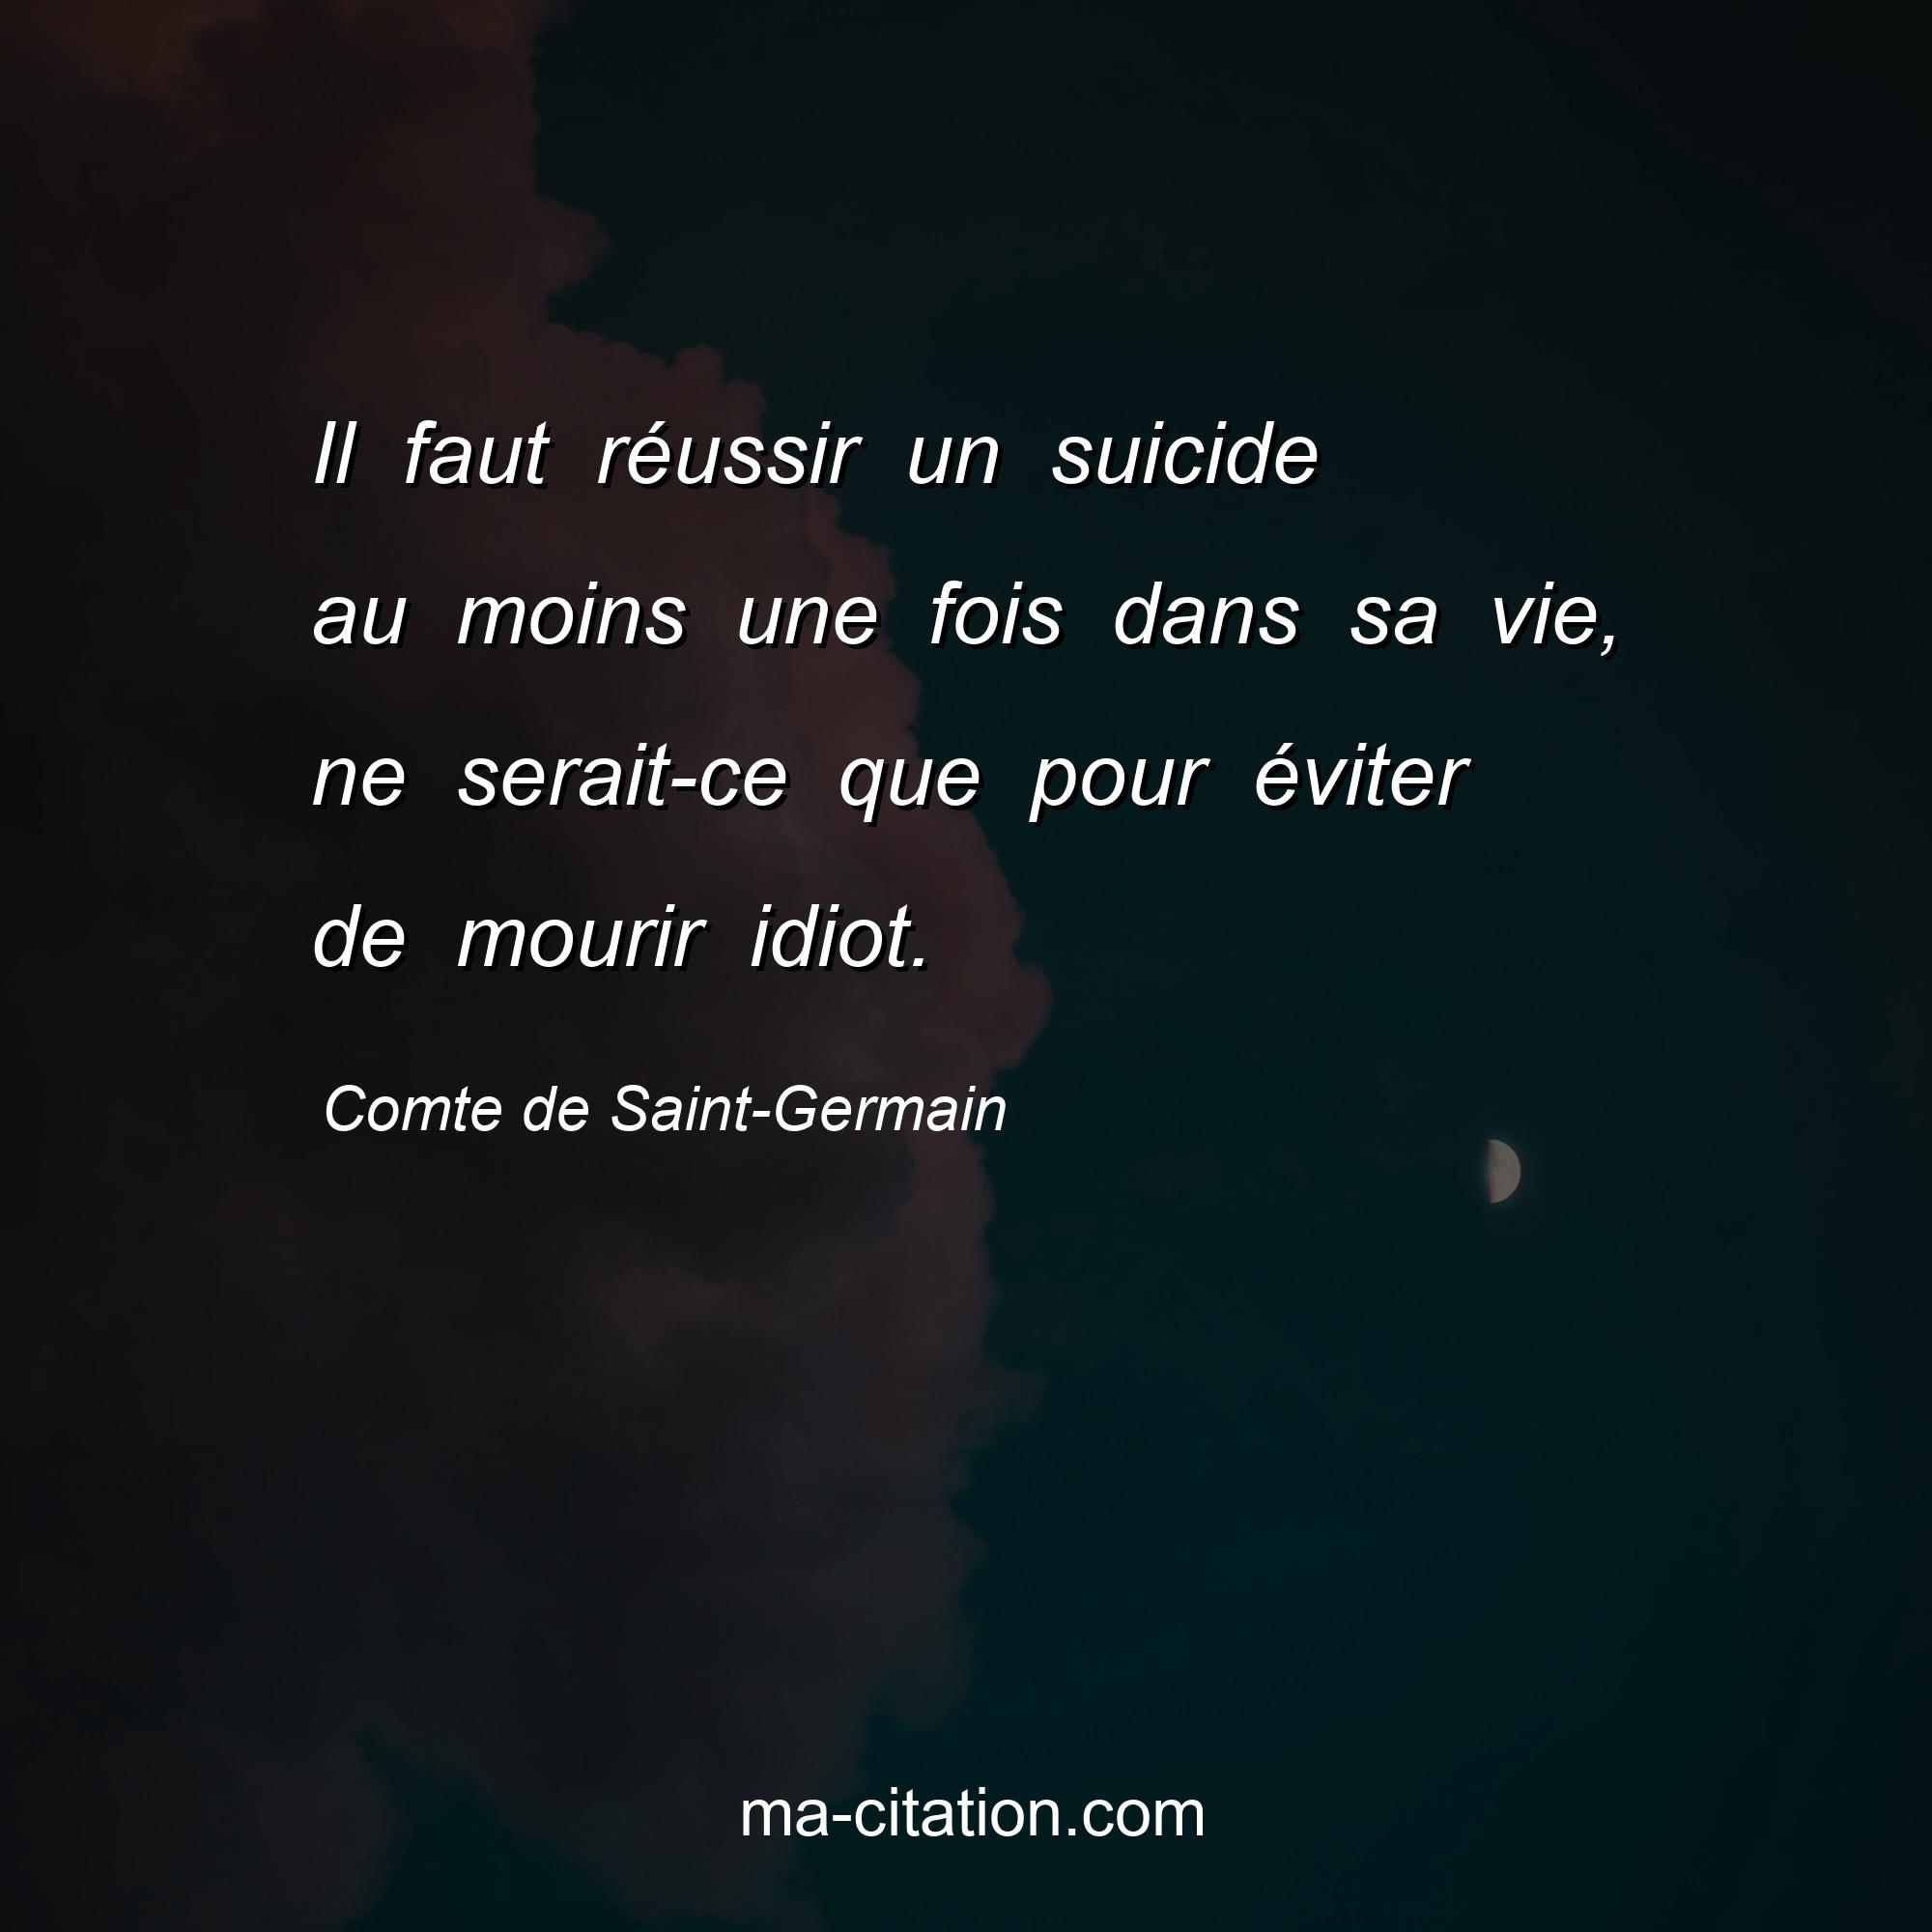 Comte de Saint-Germain : Il faut réussir un suicide au moins une fois dans sa vie, ne serait-ce que pour éviter de mourir idiot.